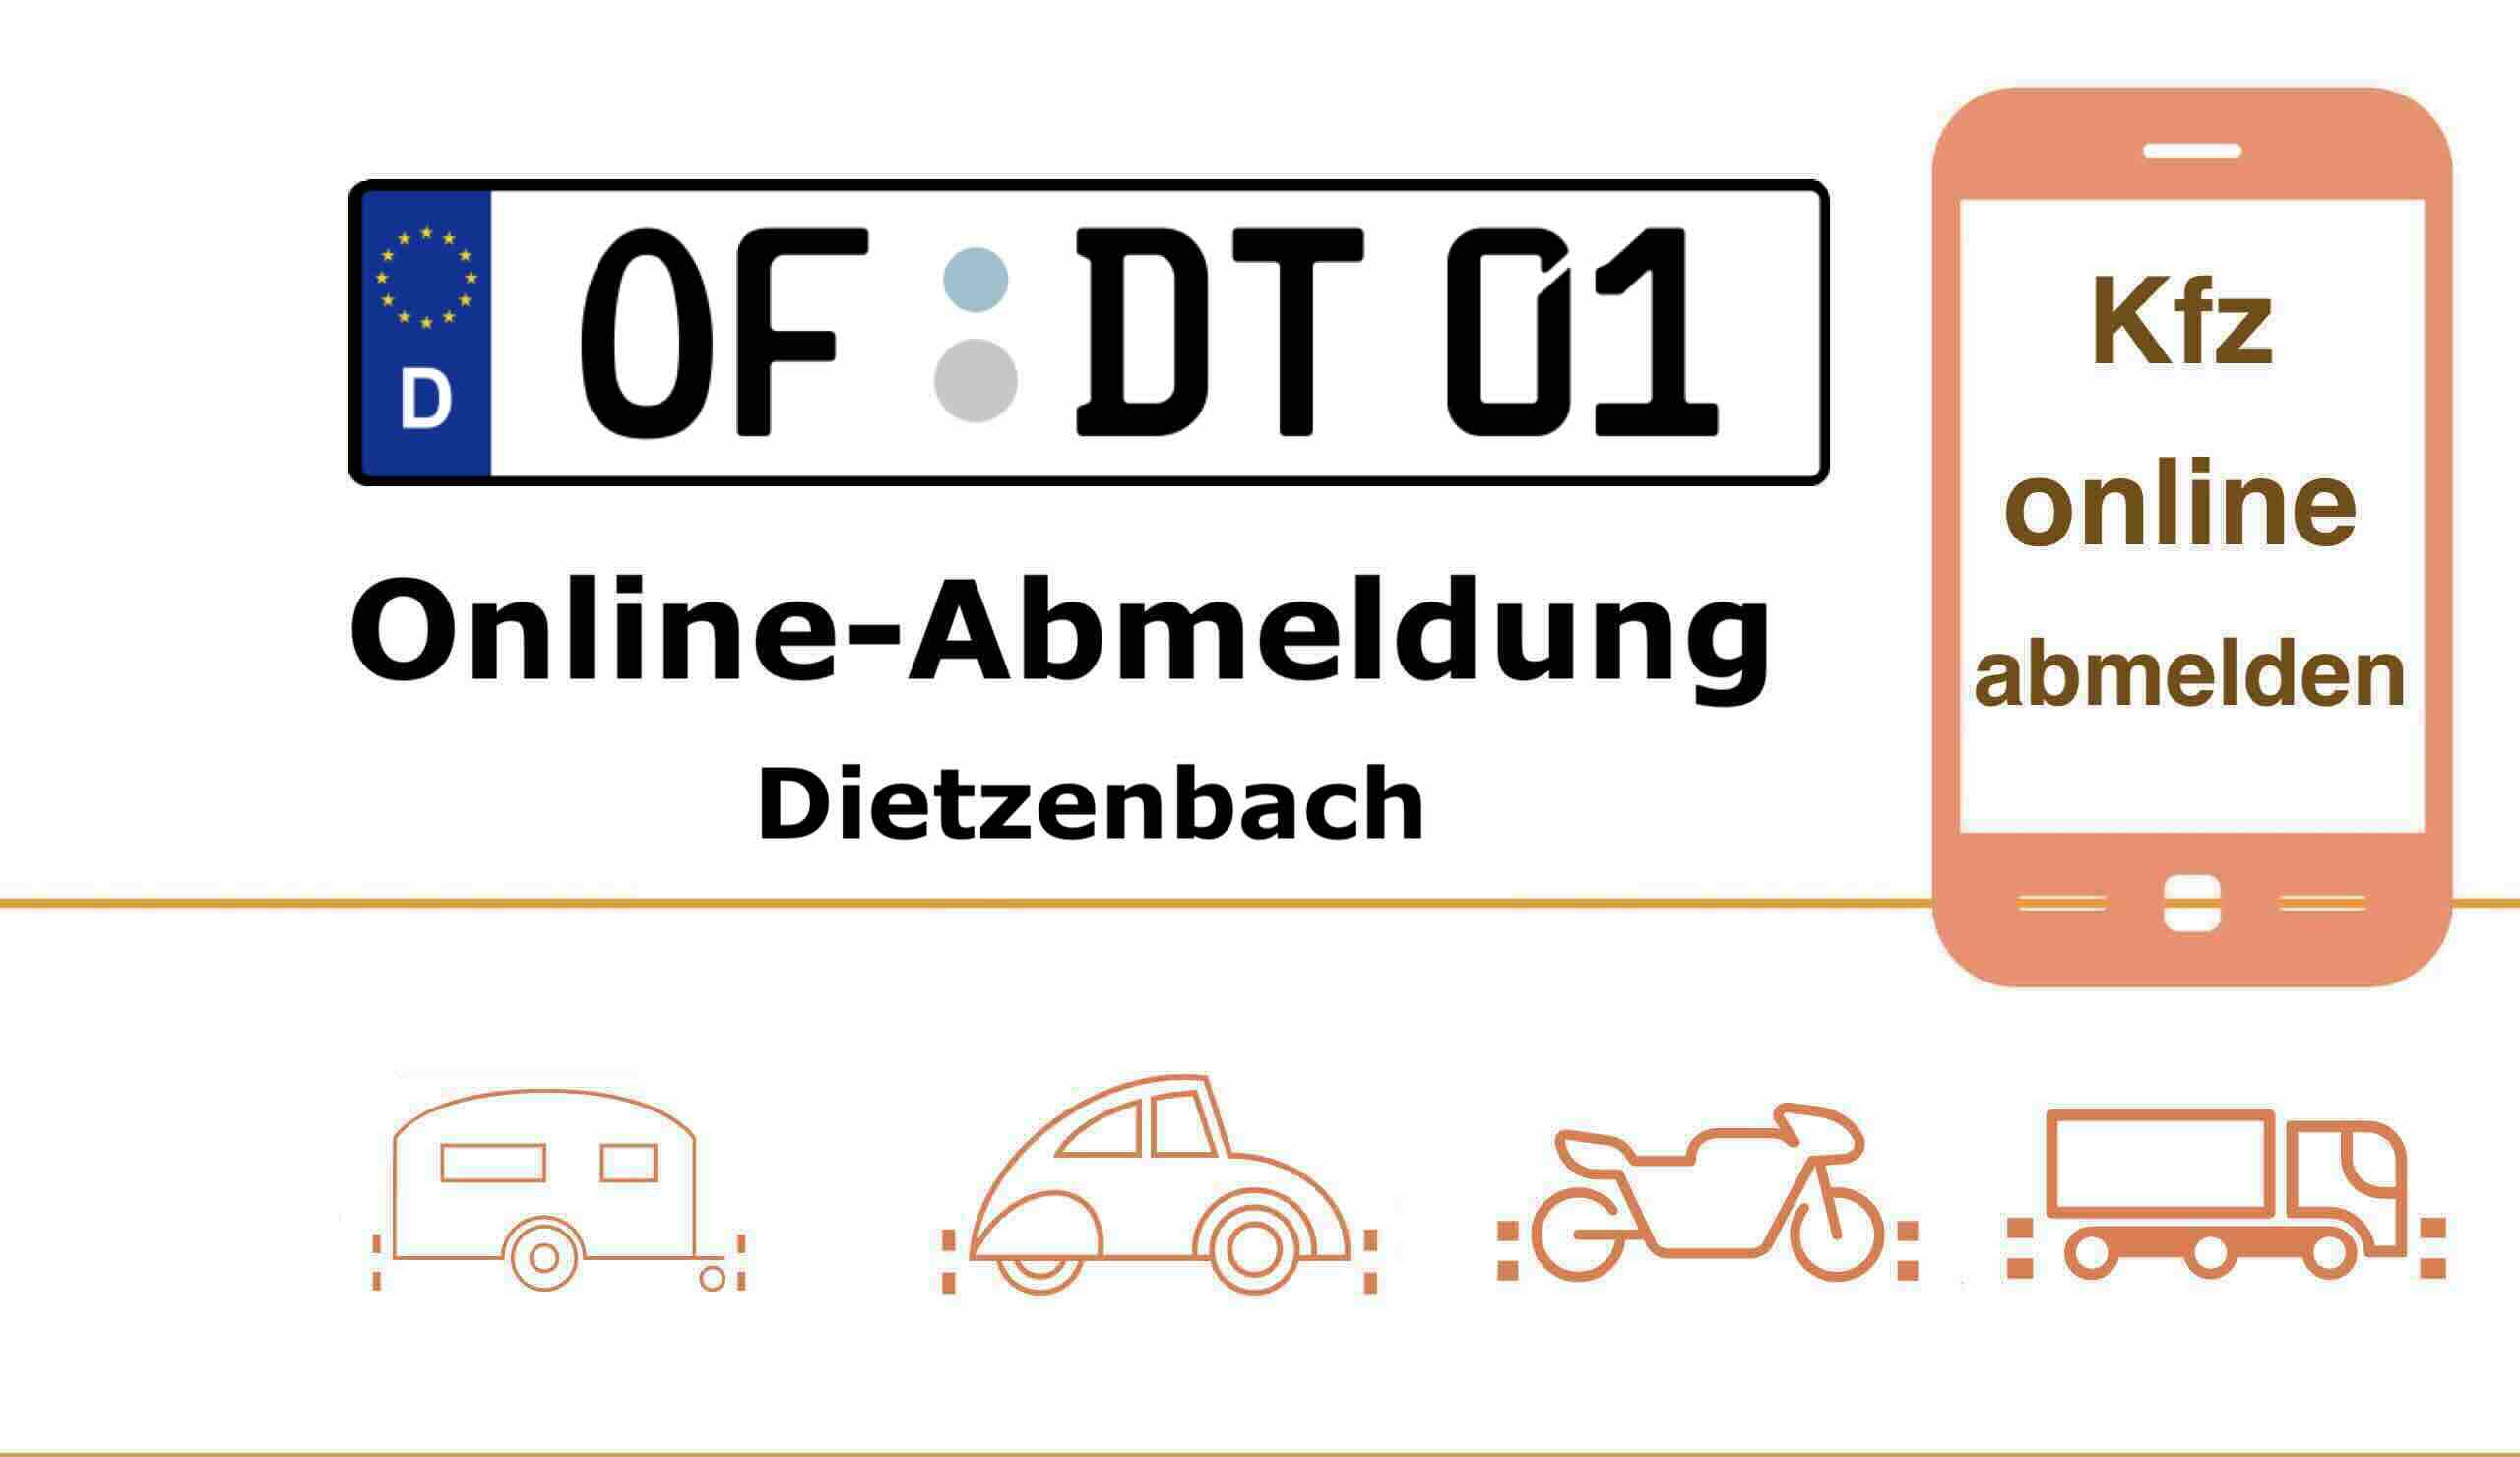 Internetbasierte Außerbetriebsetzung im Kreis Offenbach